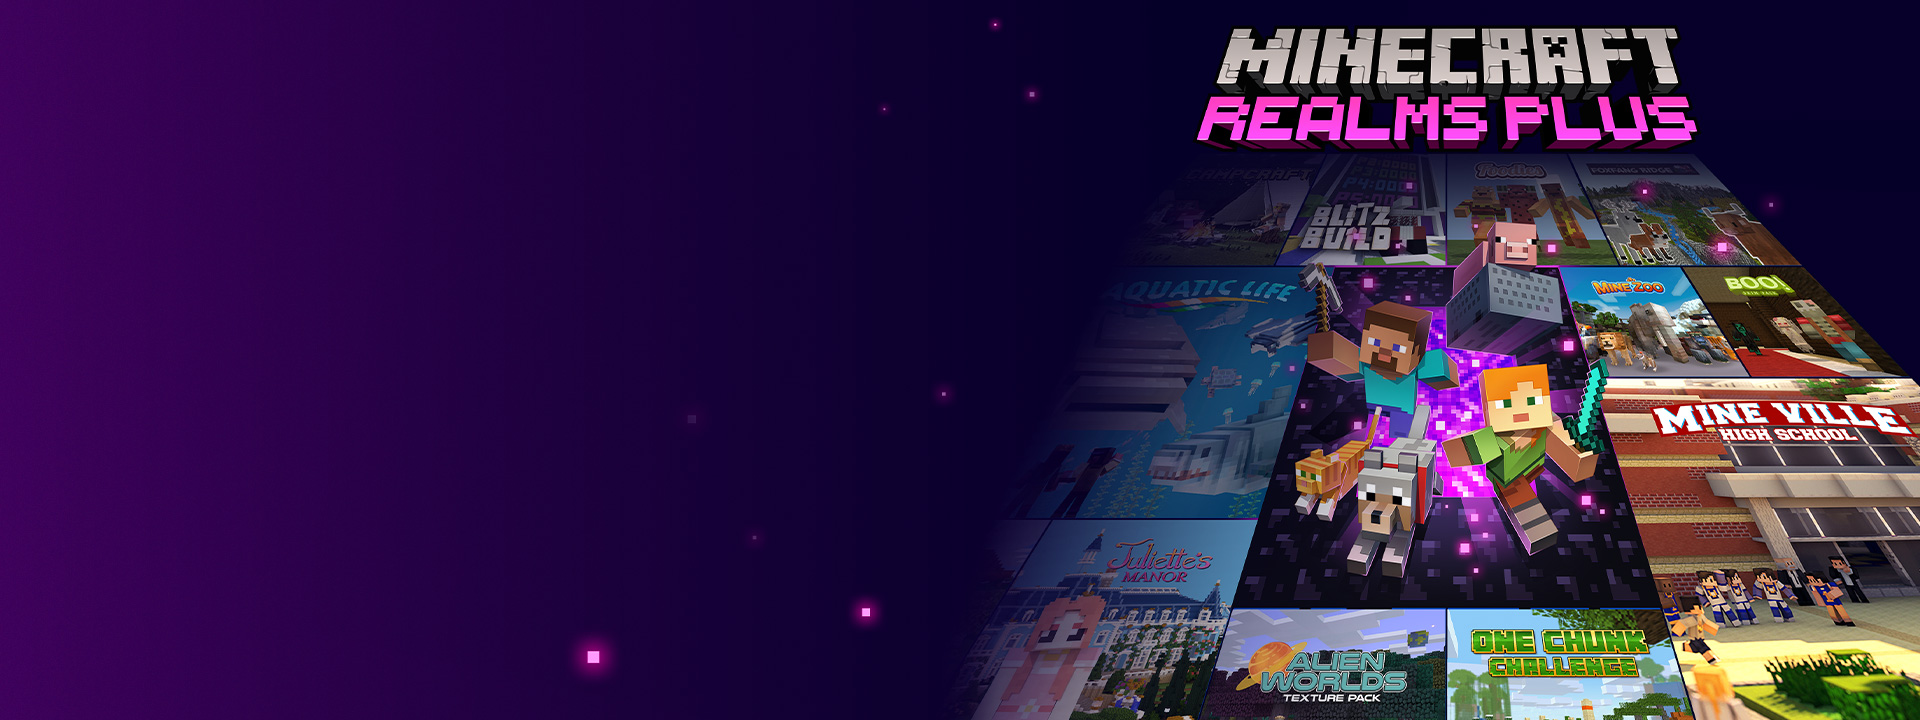 Minecraft Realms Plus, Minecraft-karakterer, der kommer ud af en Nether-portal med andre kassebilleder ved siden af